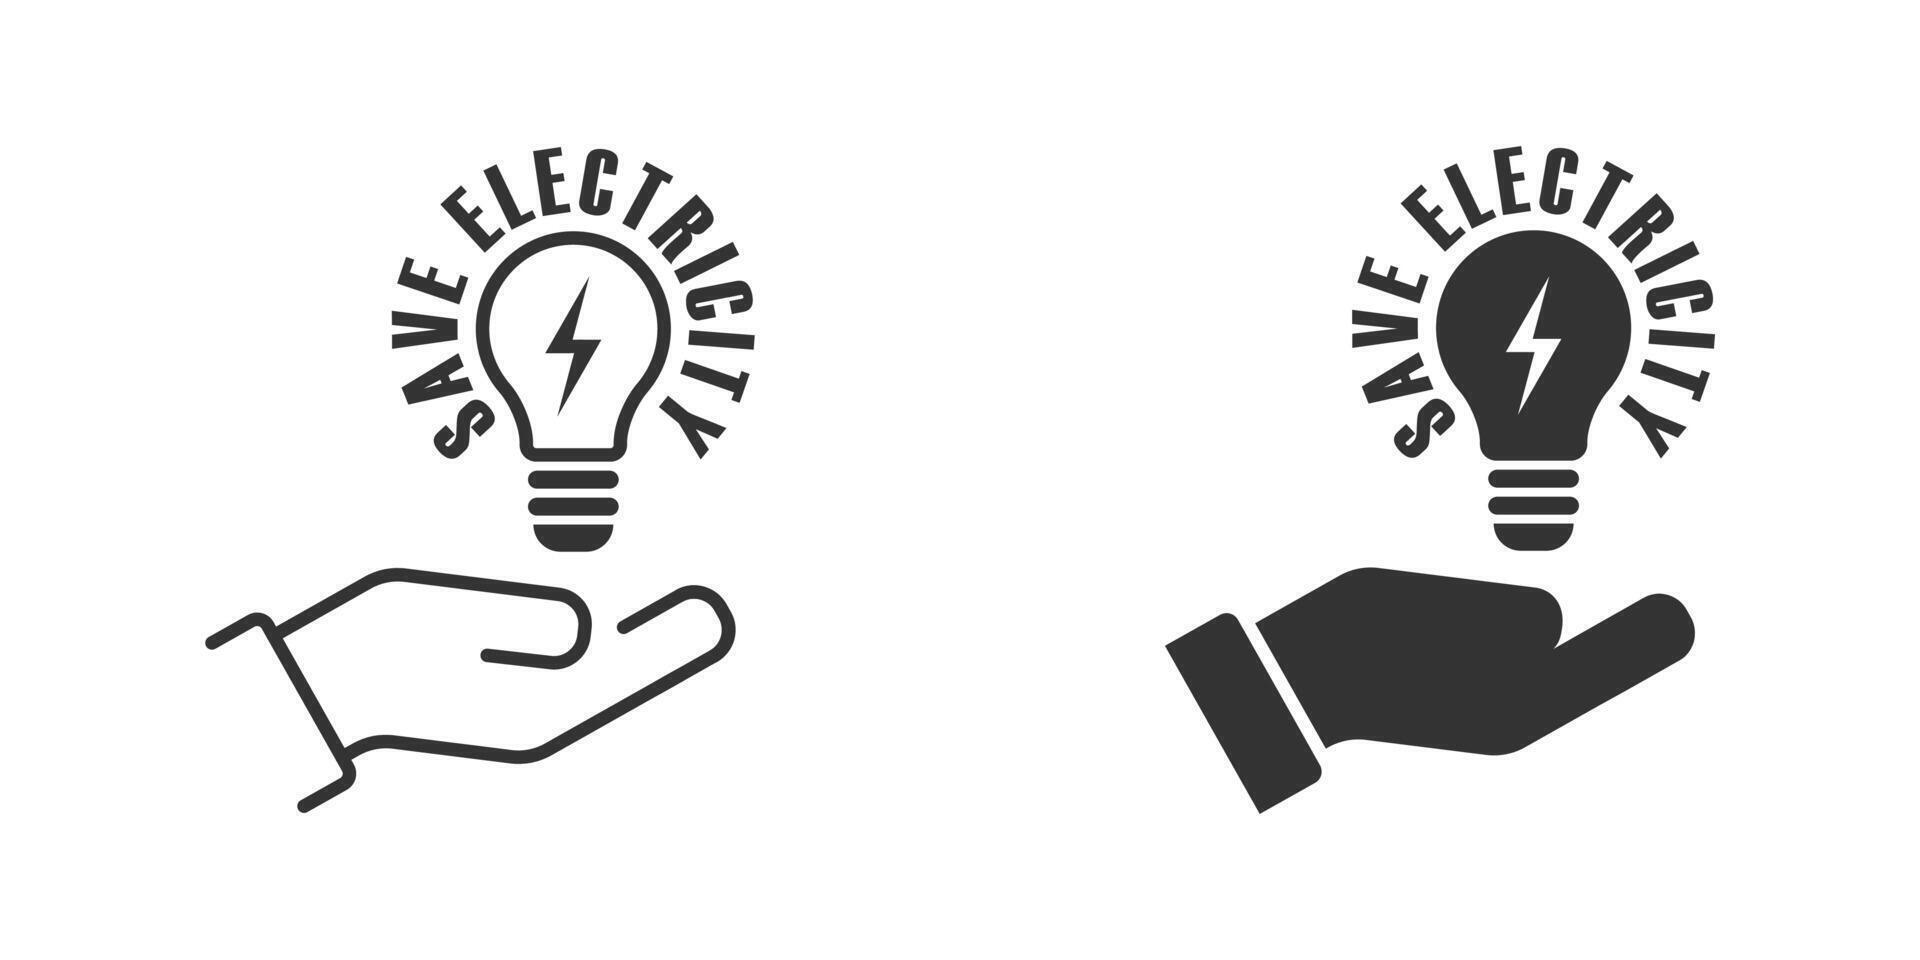 spara elektricitet ikon. Glödlampa på en hand med text. vektor illustration.